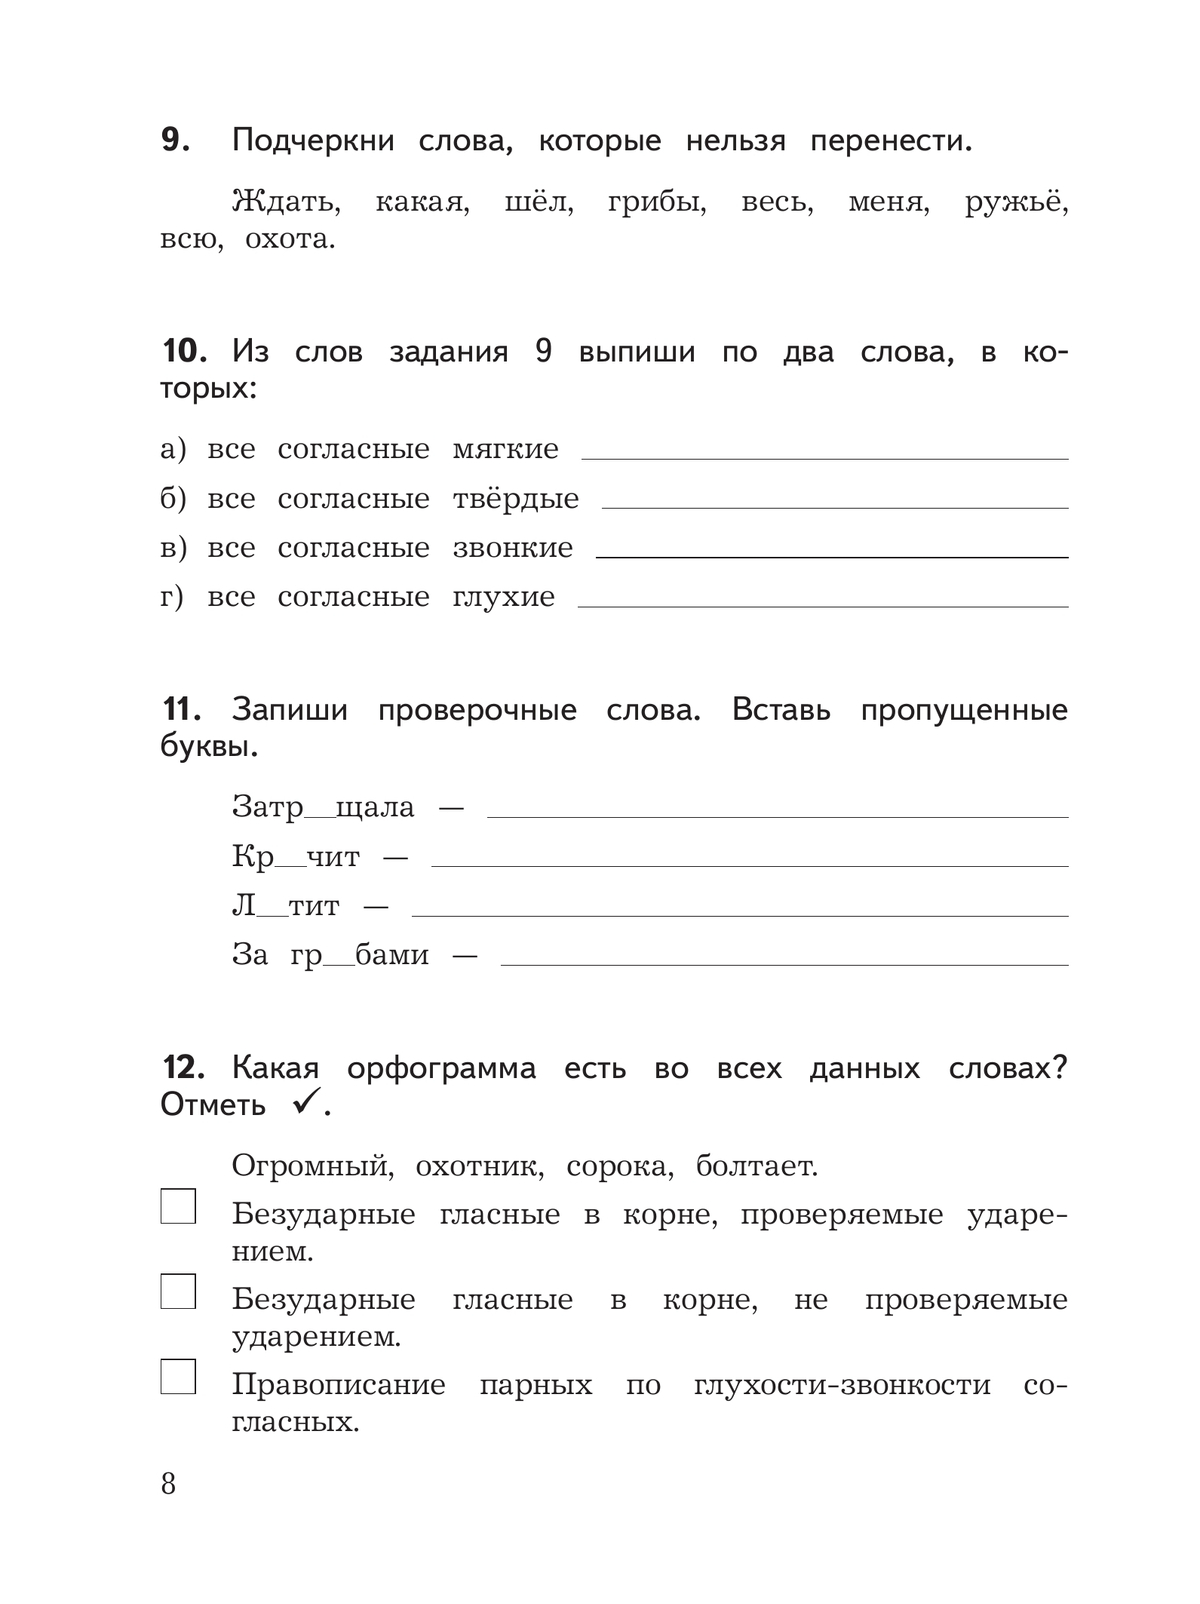 Русский язык.Предварительный контроль, текущий контроль, итоговый контроль. 3 класс 9